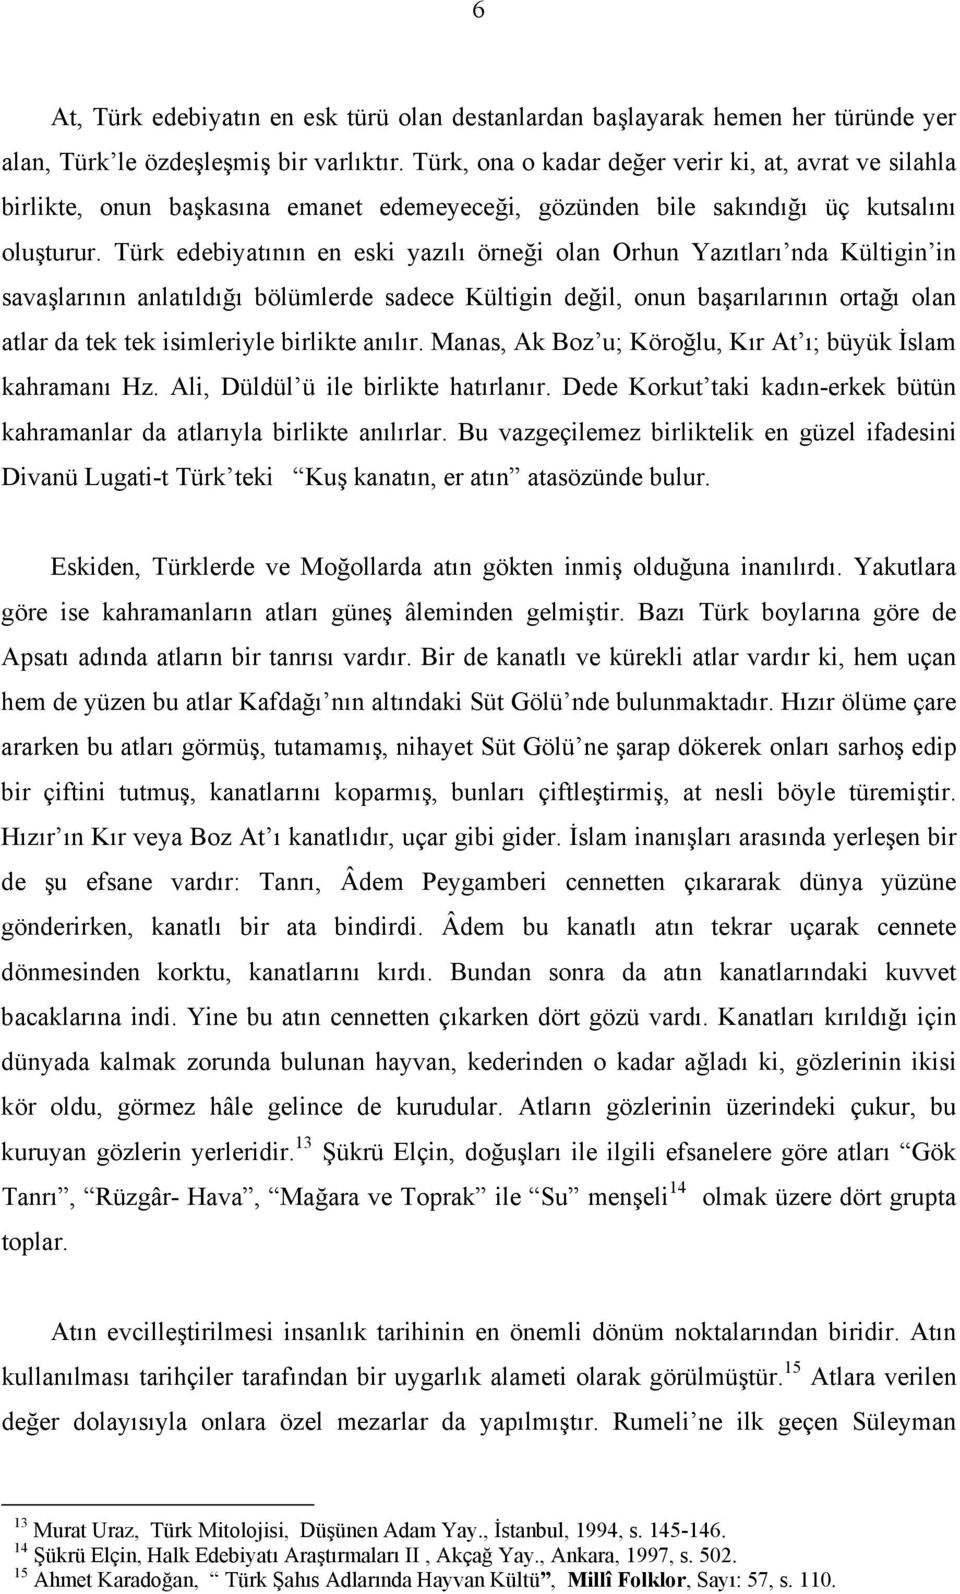 Türk edebiyatının en eski yazılı örneği olan Orhun Yazıtları nda Kültigin in savaşlarının anlatıldığı bölümlerde sadece Kültigin değil, onun başarılarının ortağı olan atlar da tek tek isimleriyle